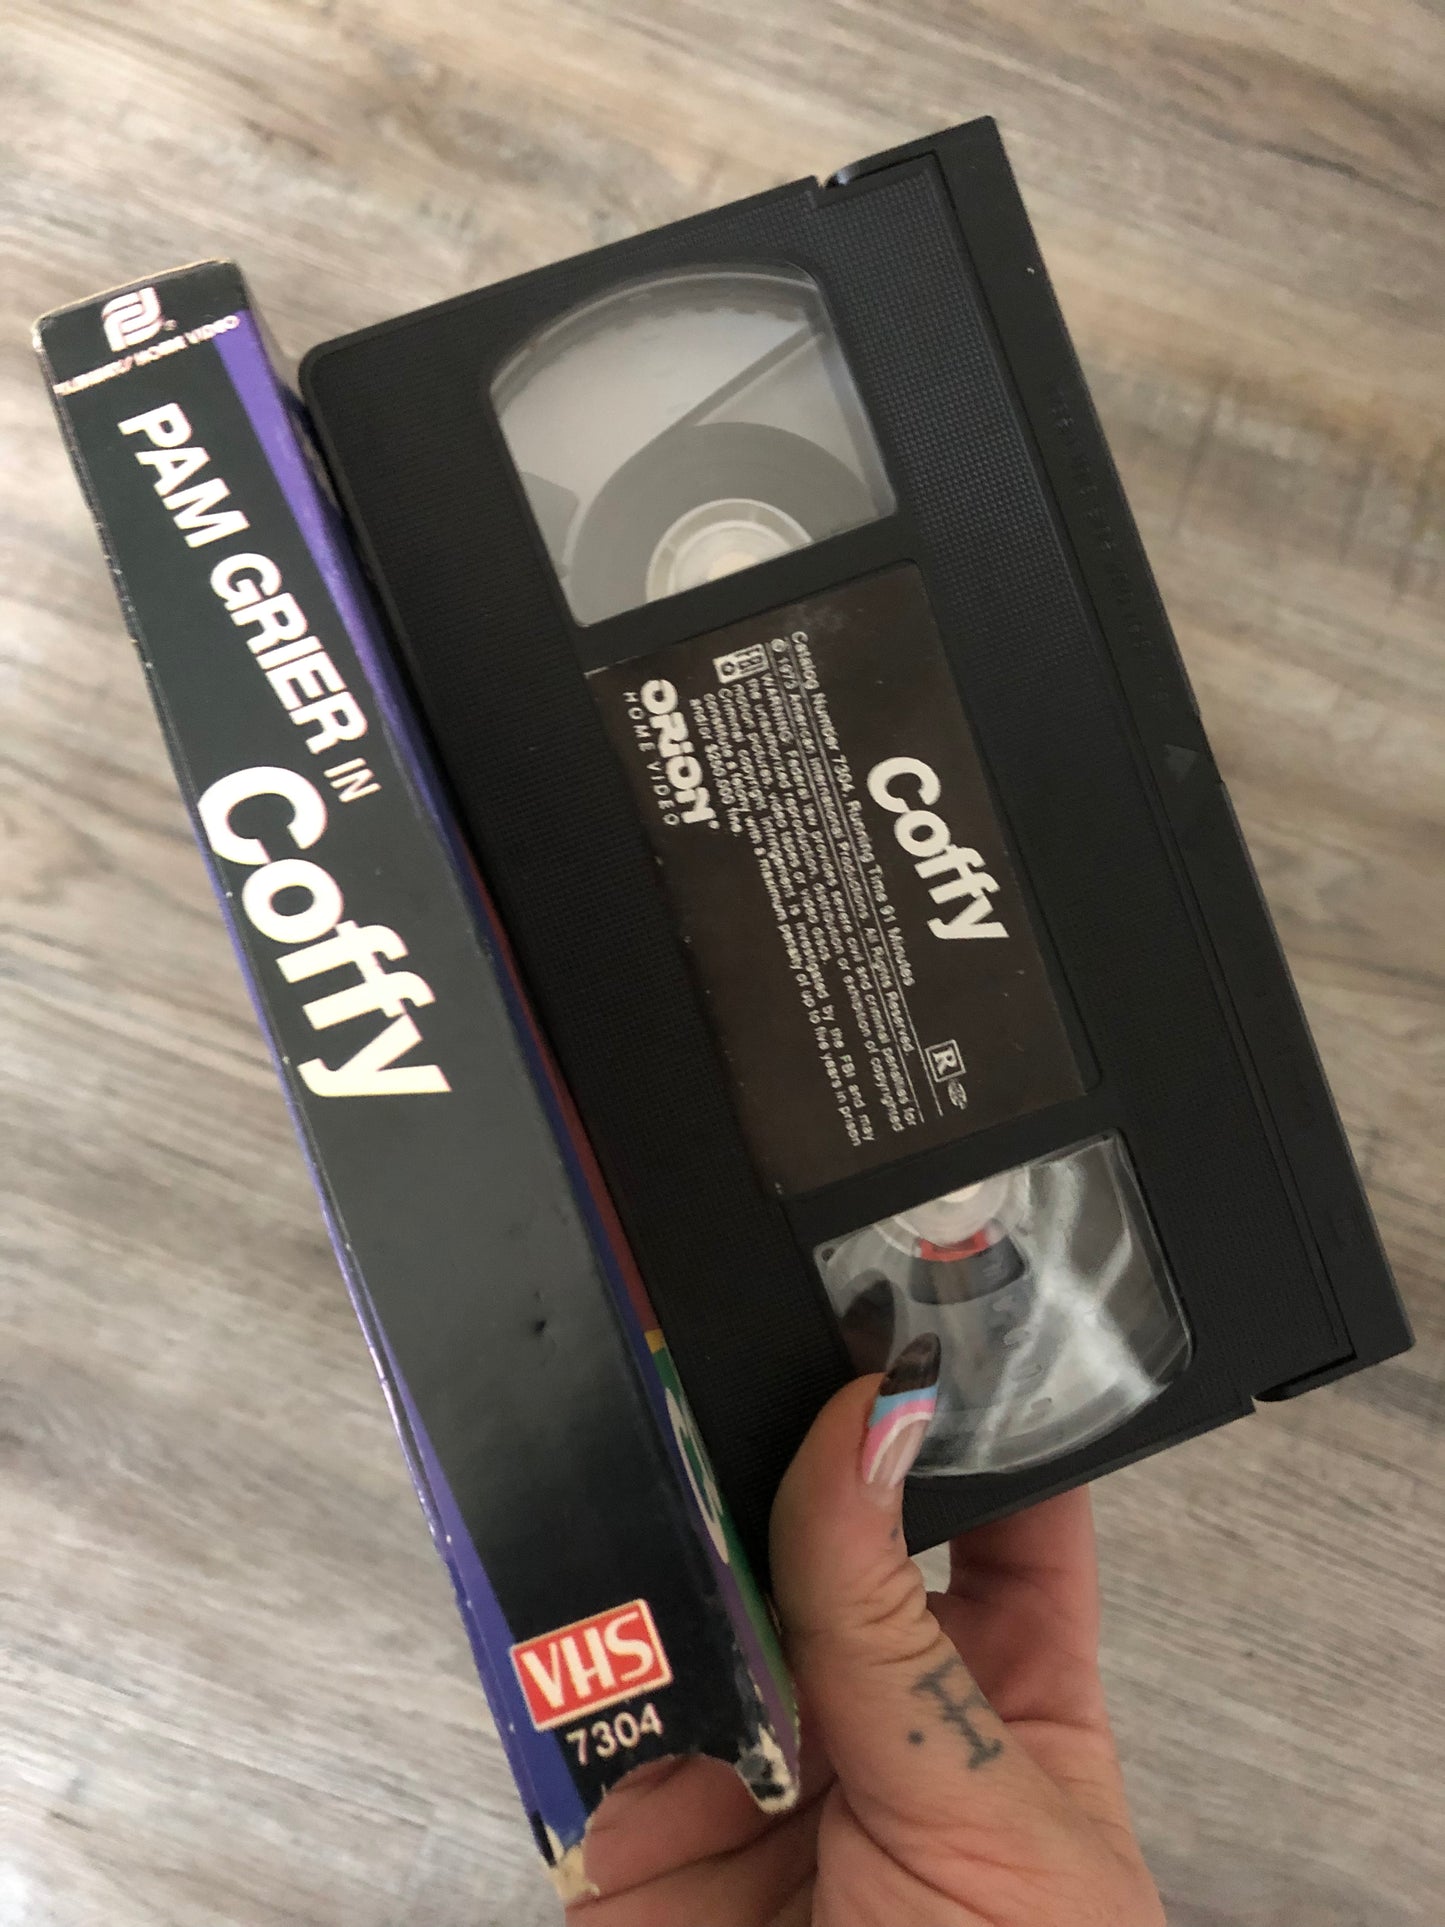 Coffy VHS